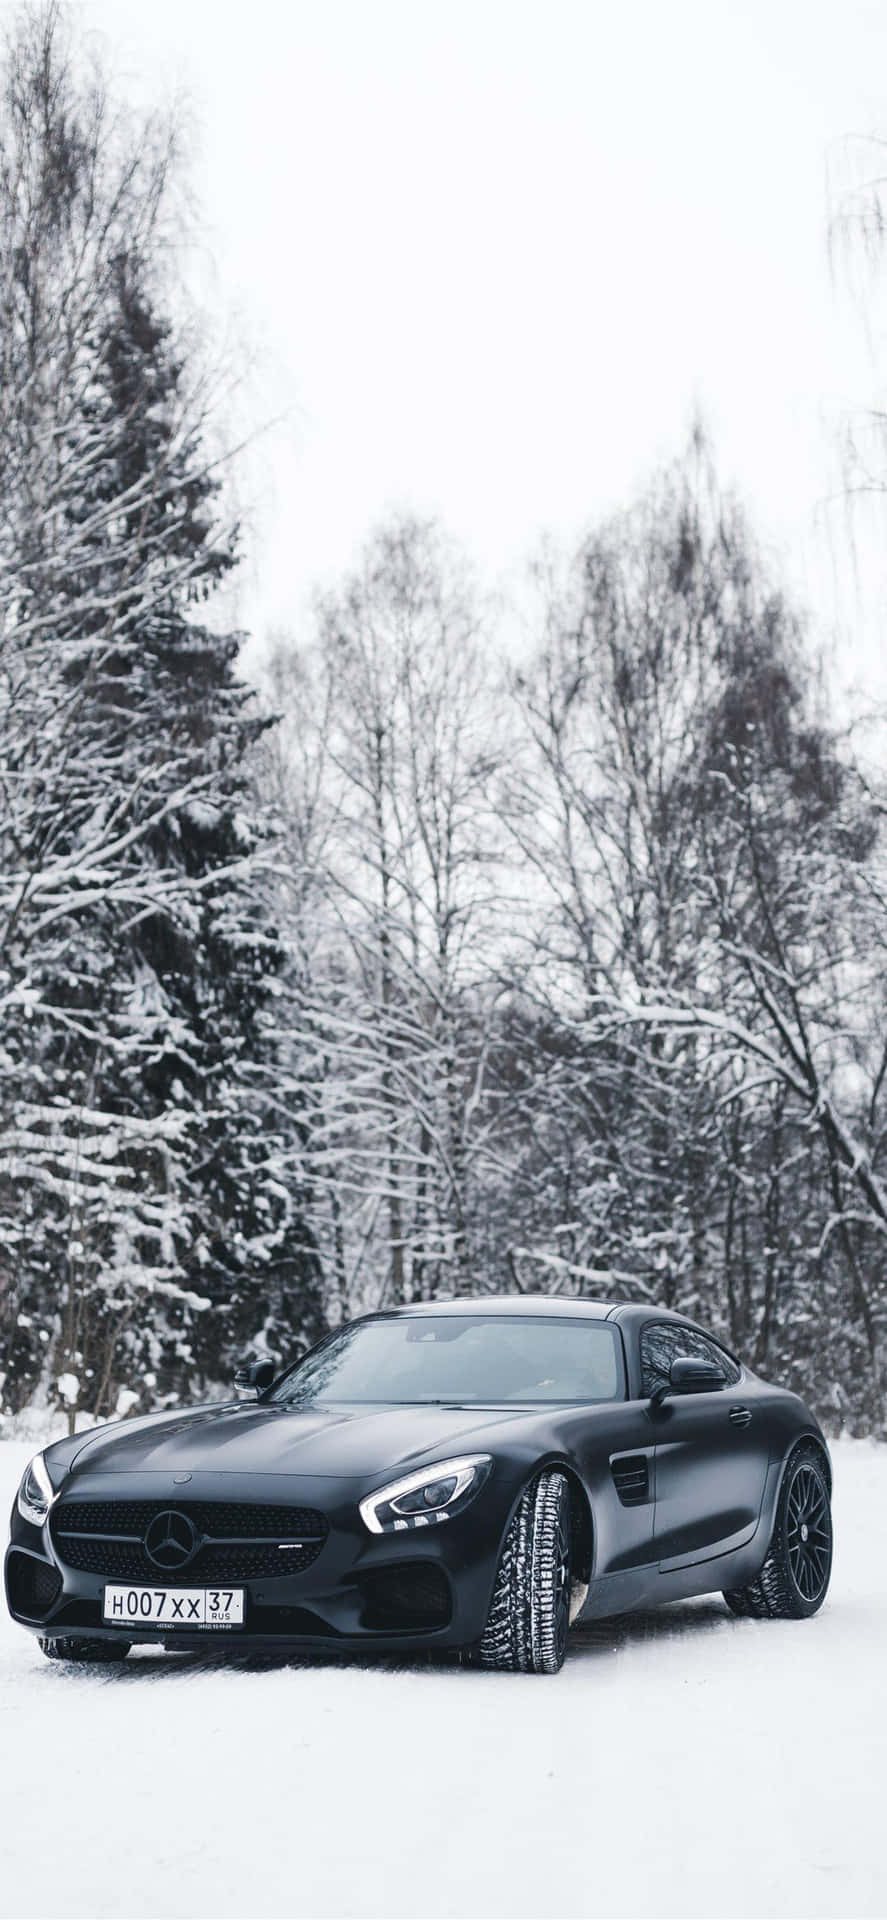 Snöigsvart Gt Iphone Xs Mercedes Amg Bakgrundsbild.